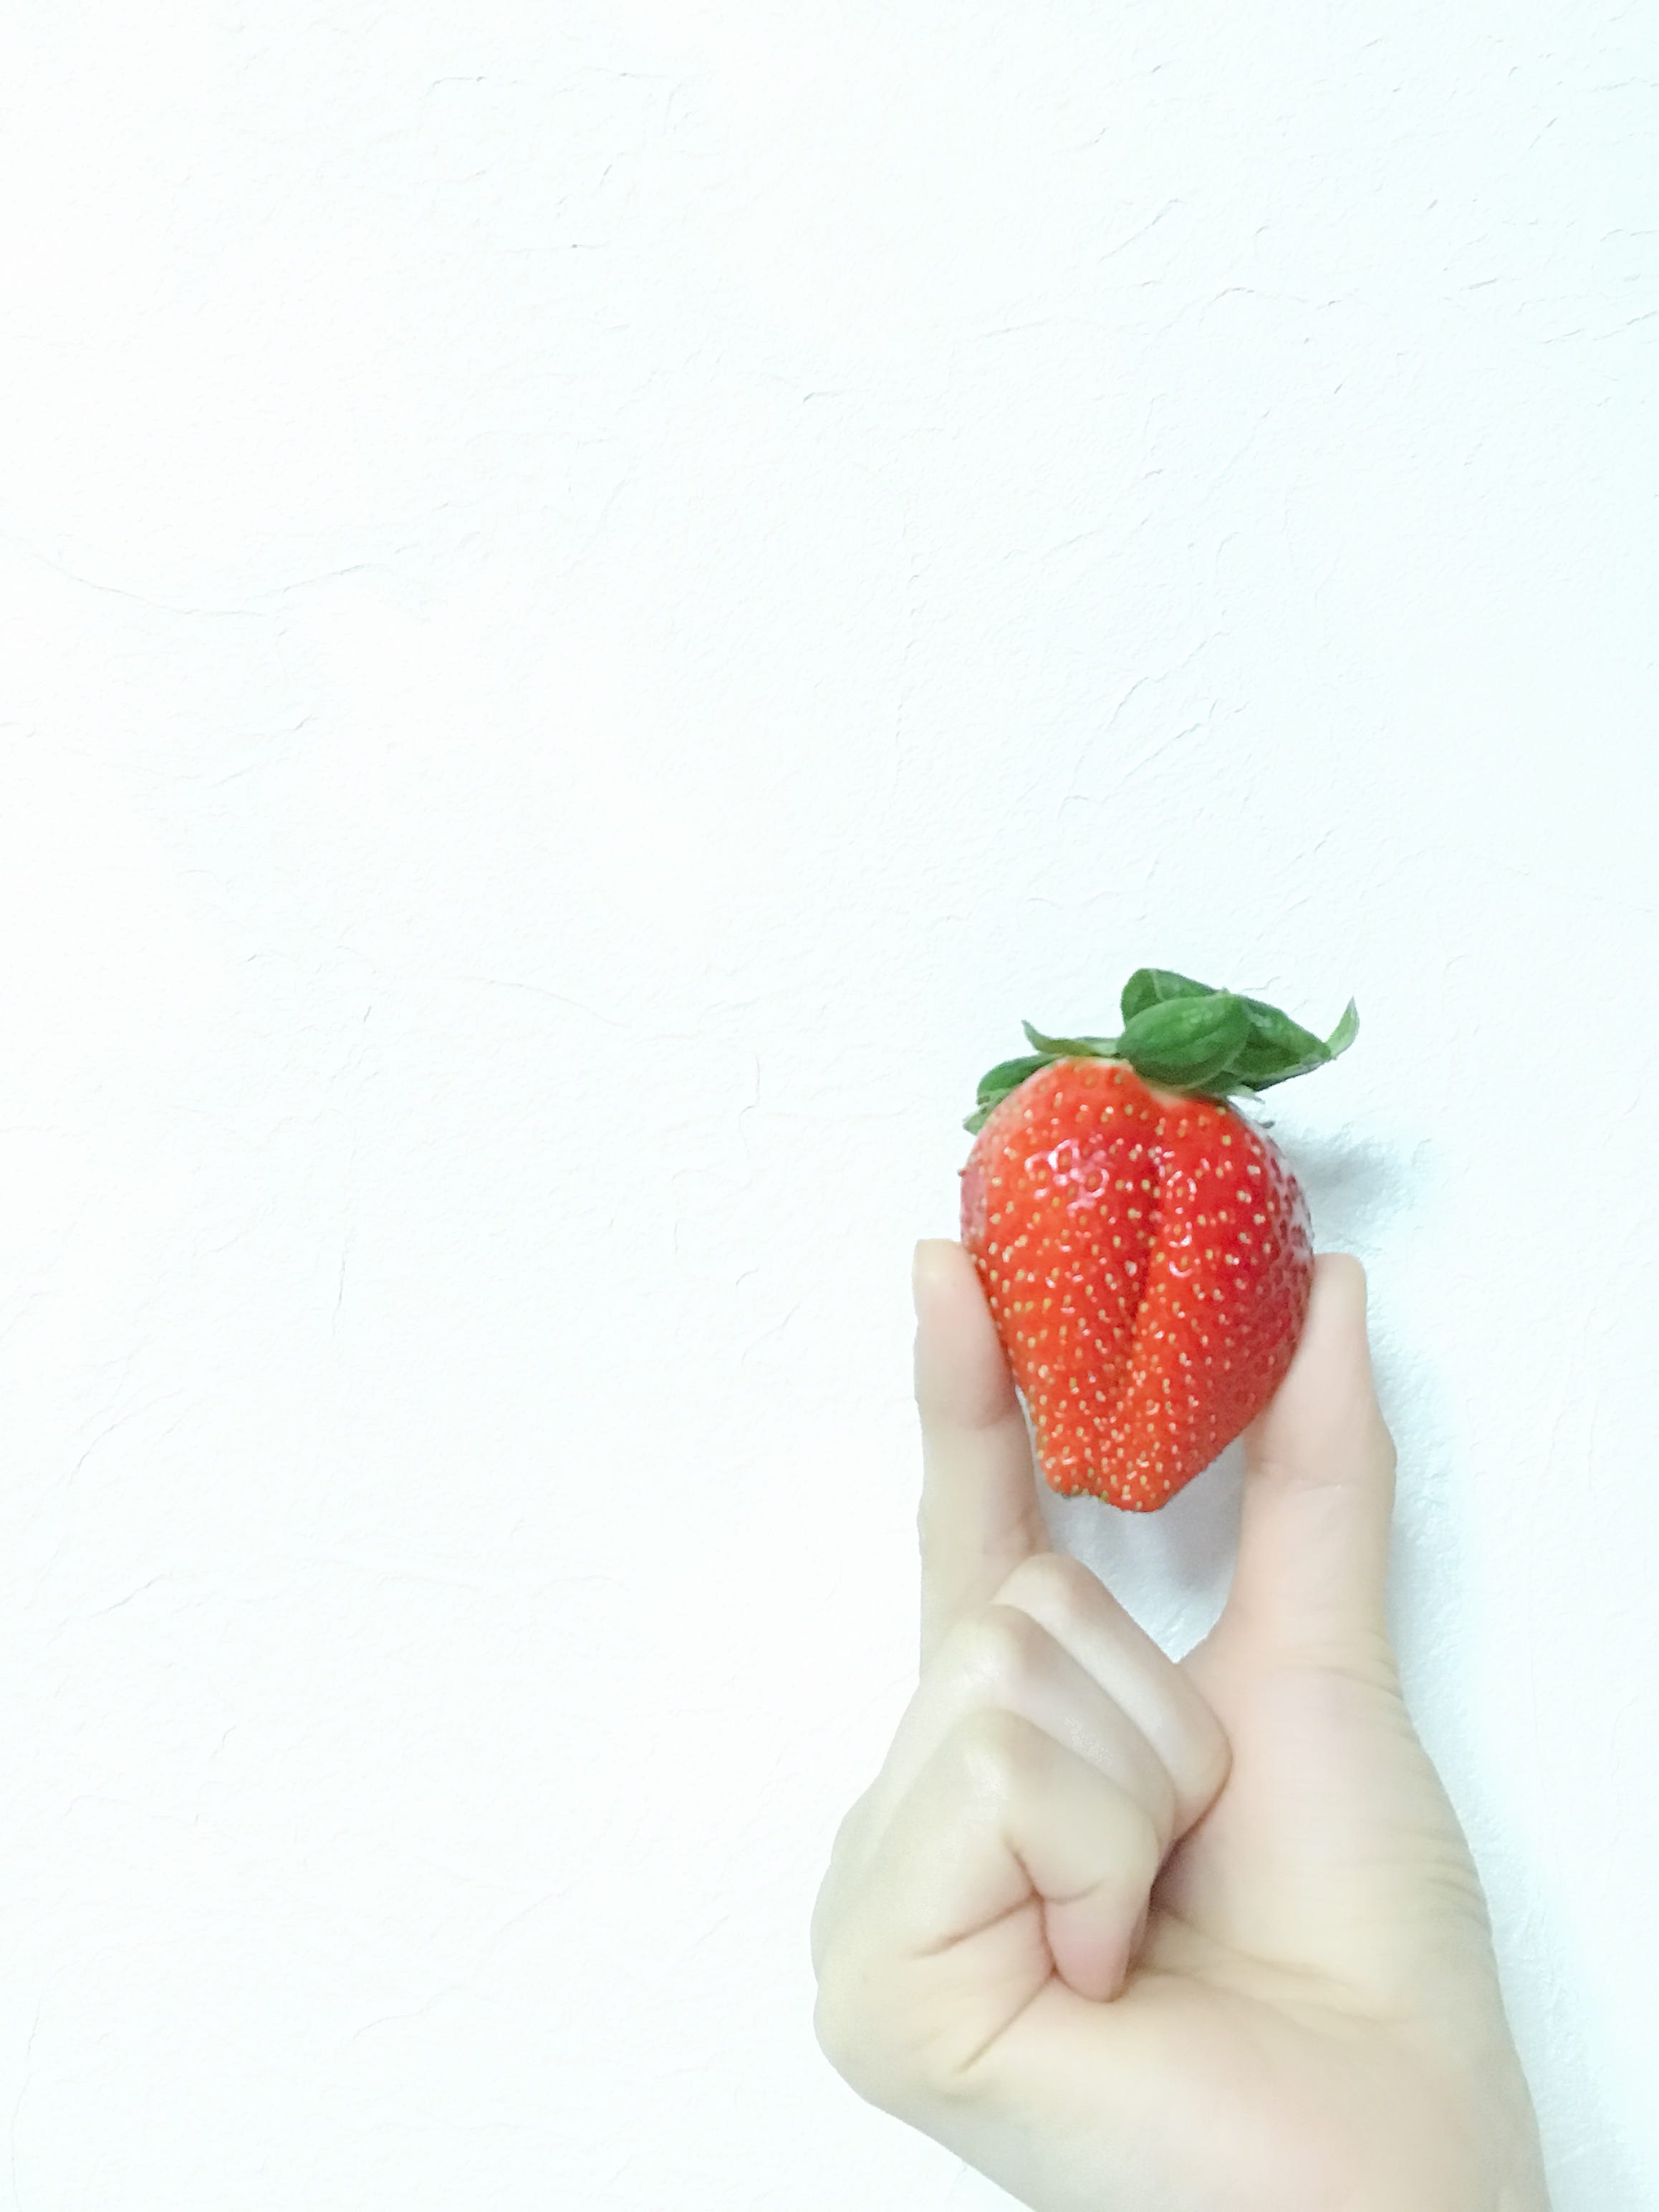 I Love Strawberry 英語の勉強 アメリカ英語は聞き取れん かっこいいけどね By ണ੨y ୩੨ Medium